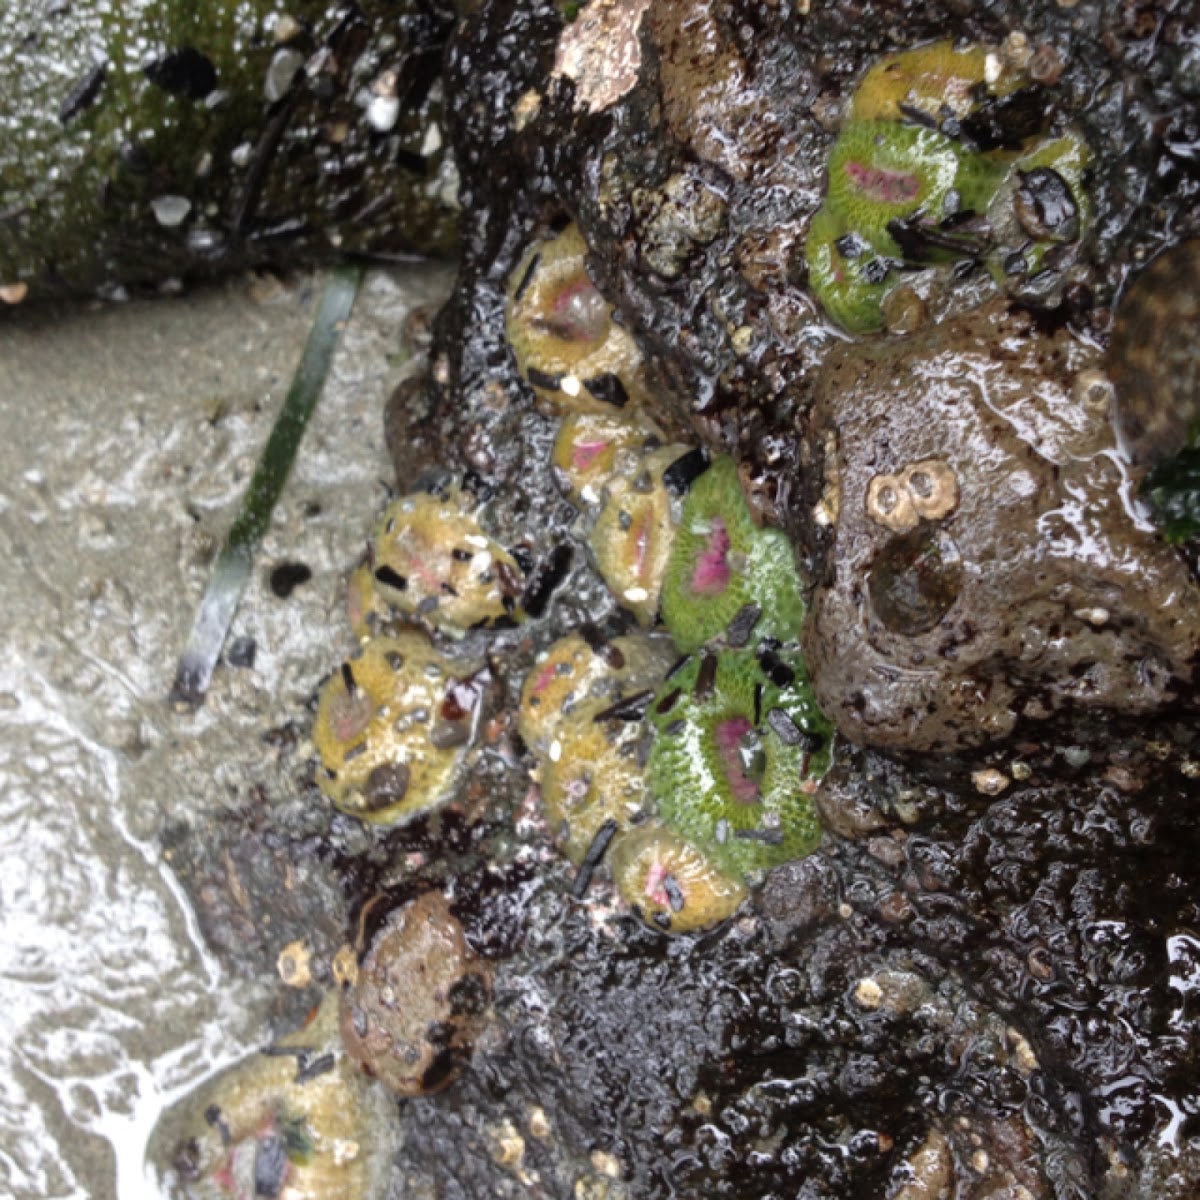 Aggregate anemone